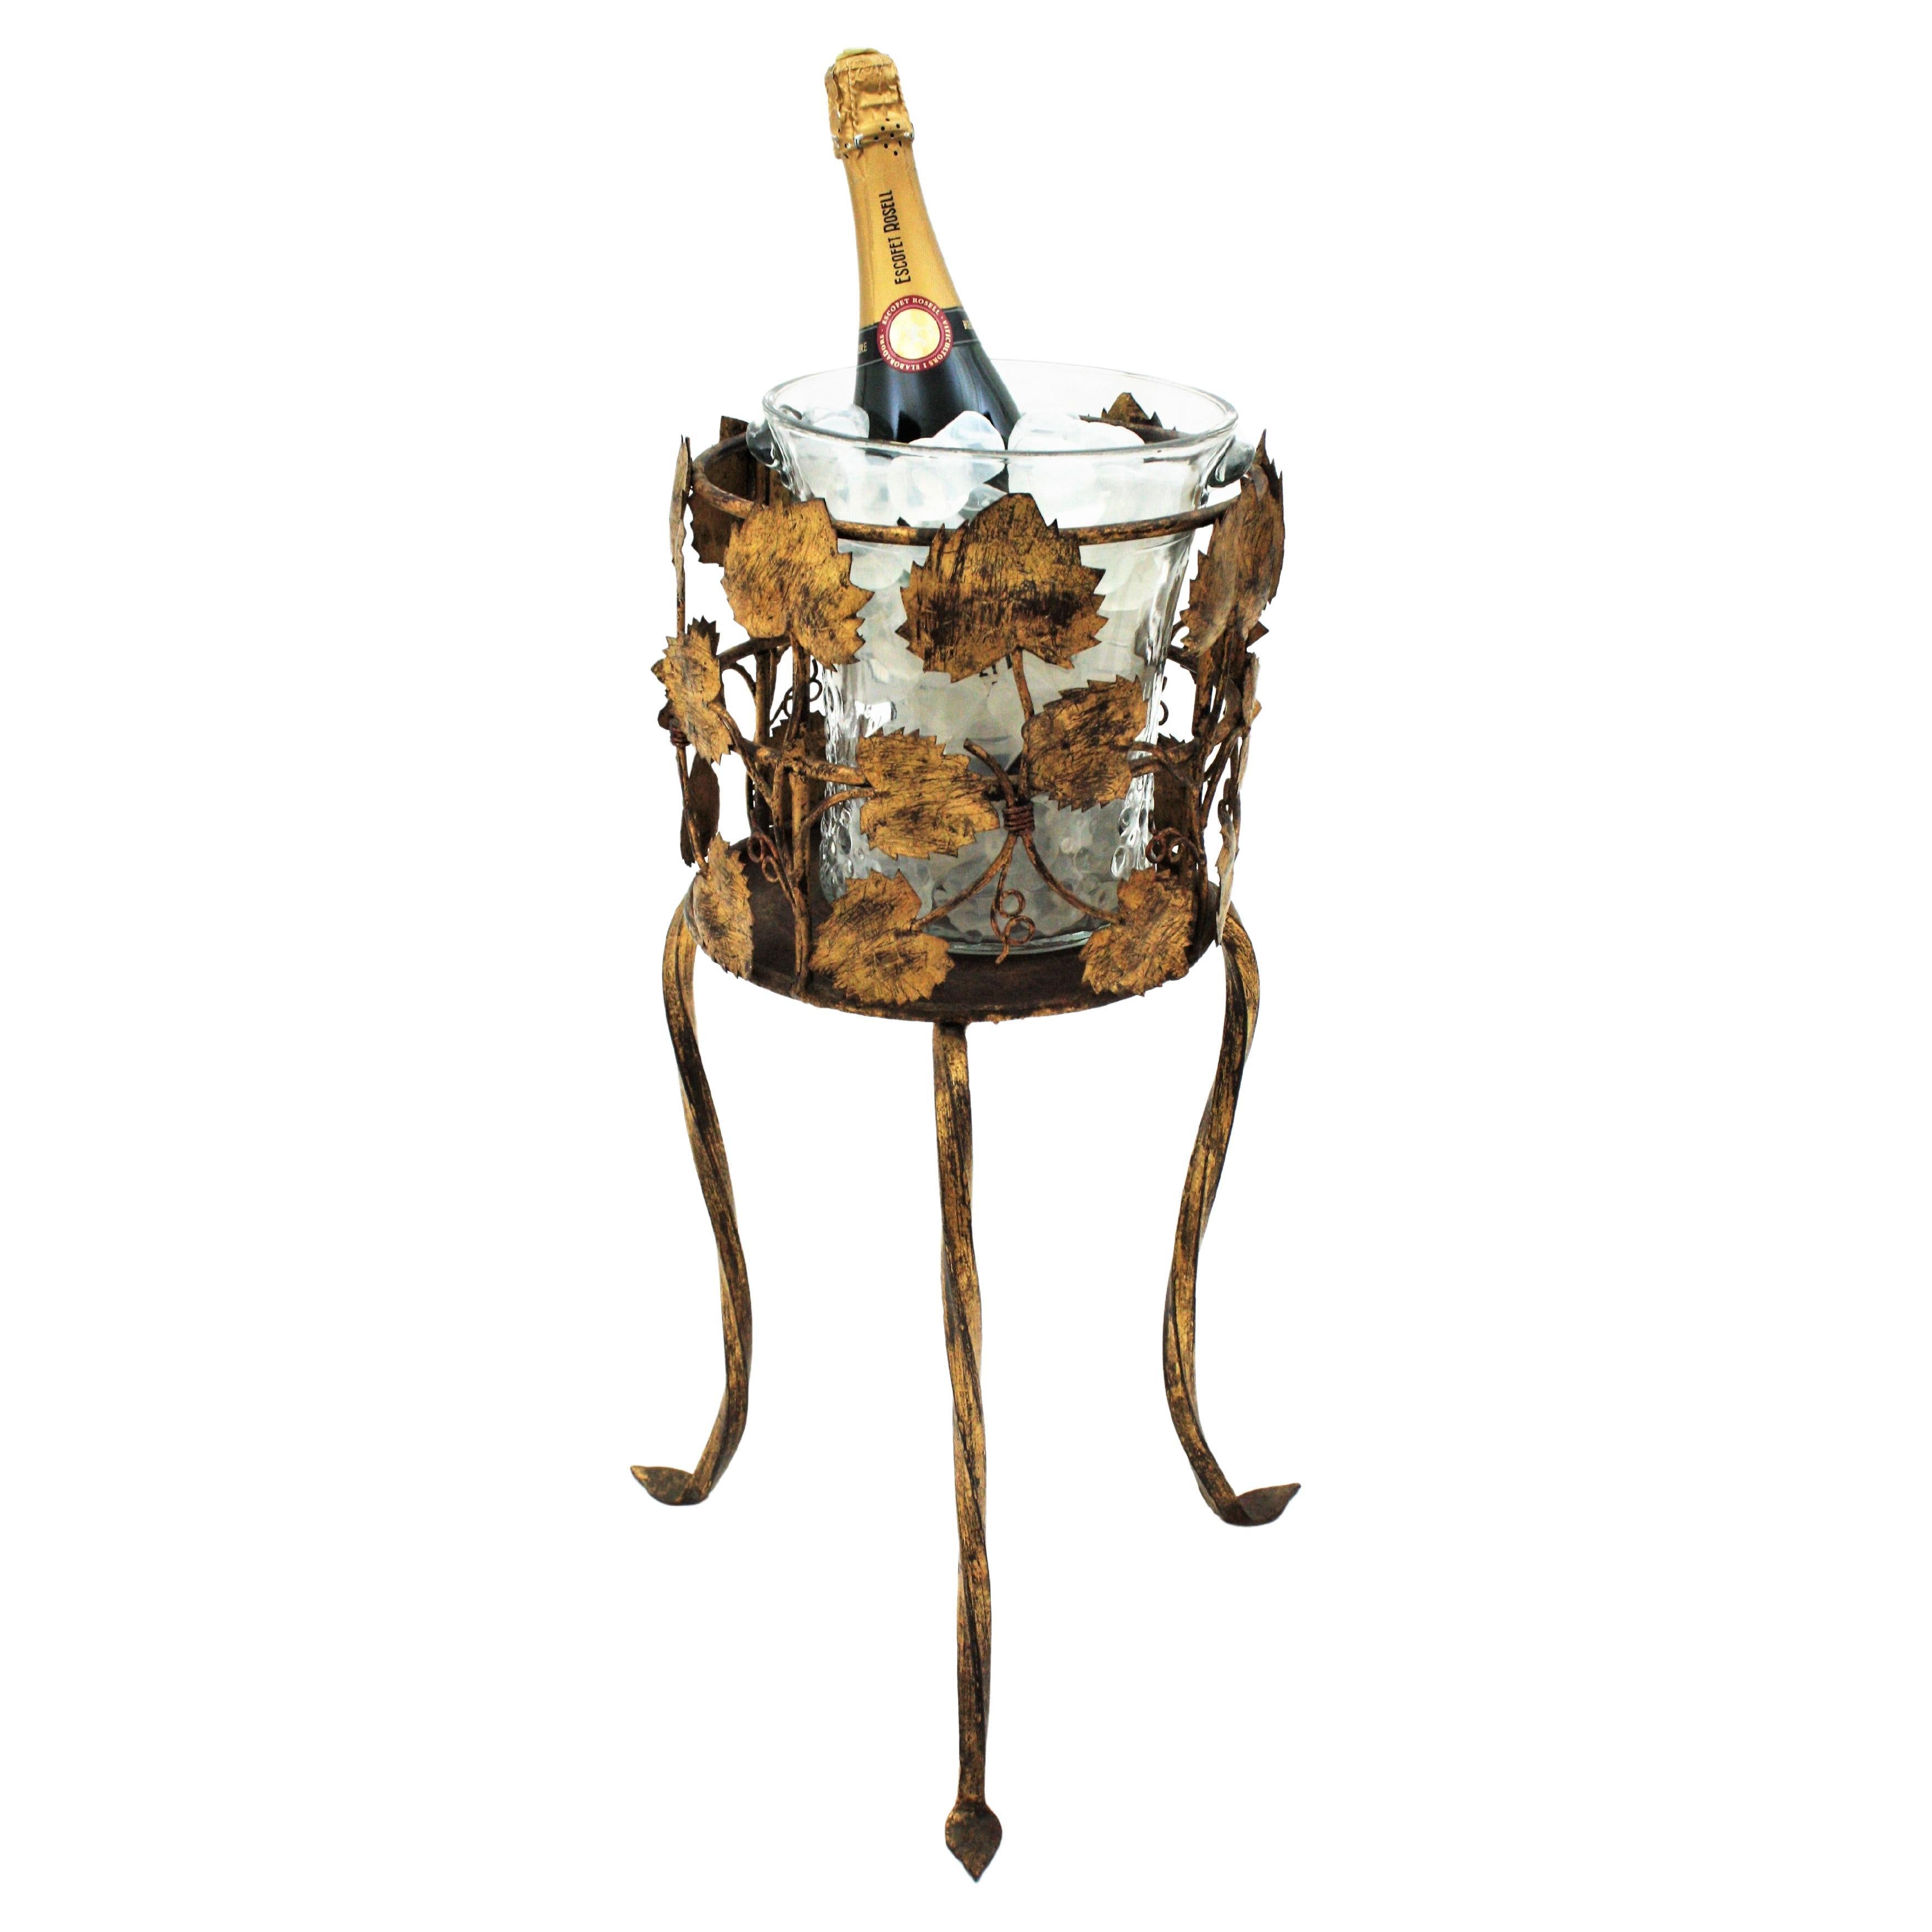 Champagner Weinkühler Stand Eiskübel / Getränkeständer, Foliage Design, vergoldetes Eisen